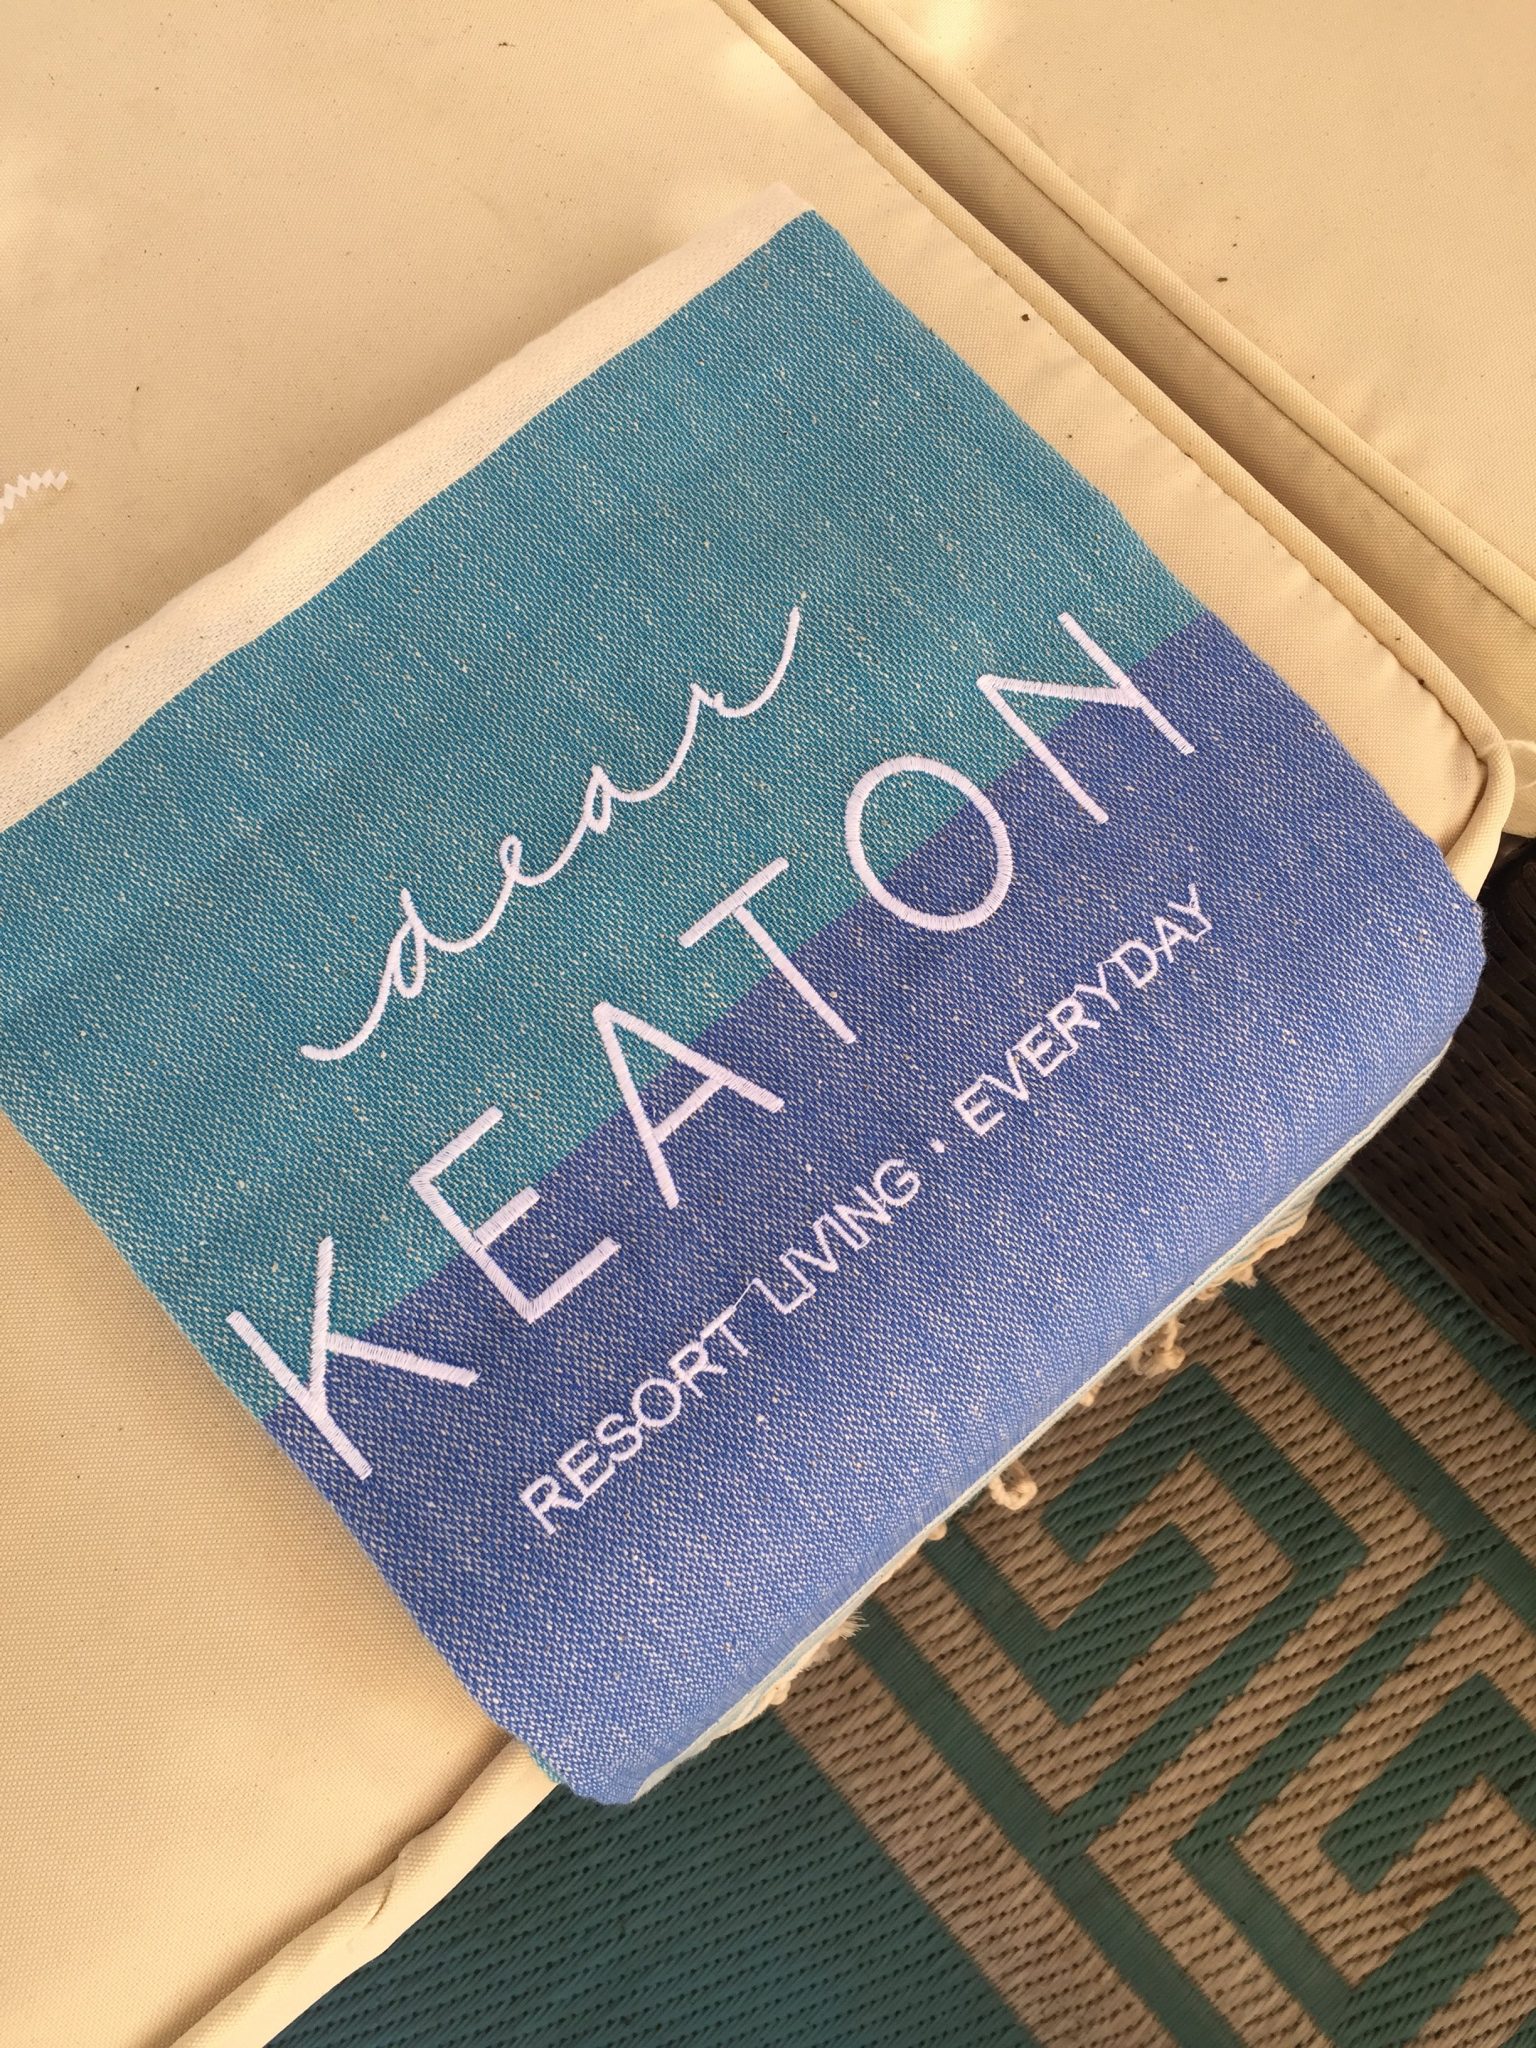 dear keaton resort store